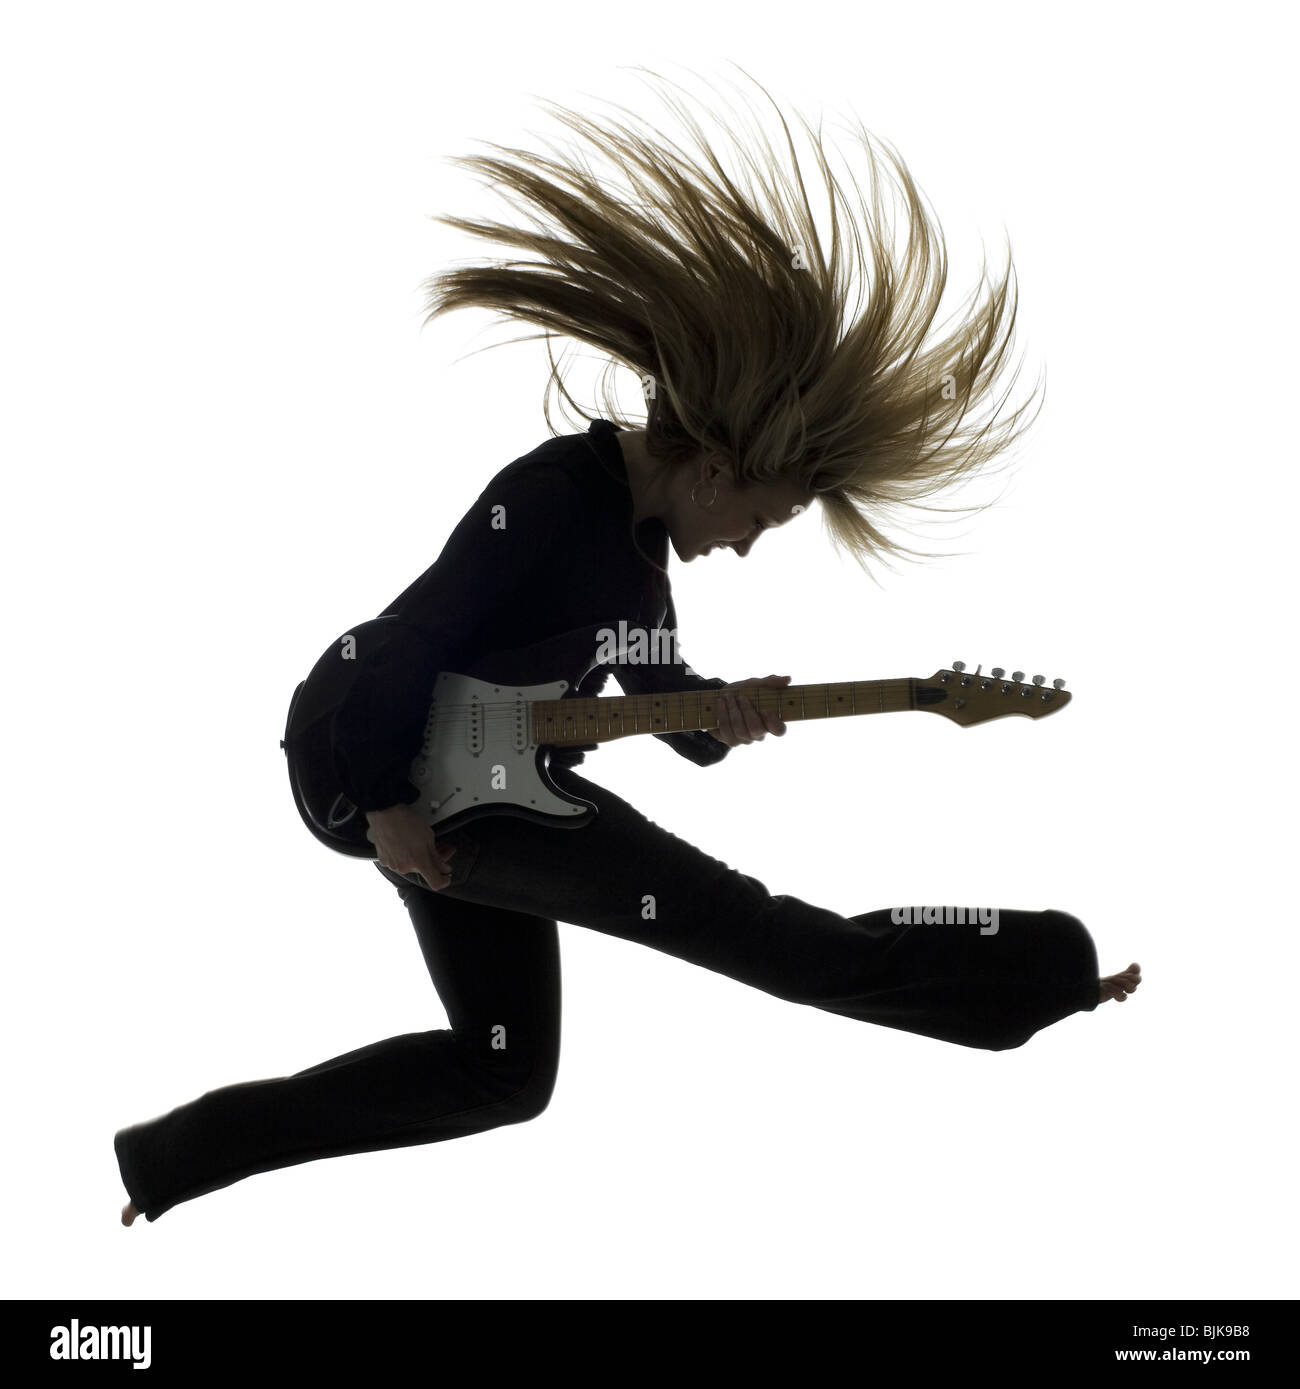 El perfil lateral silueta de mujer saltando con guitarra eléctrica Foto de stock